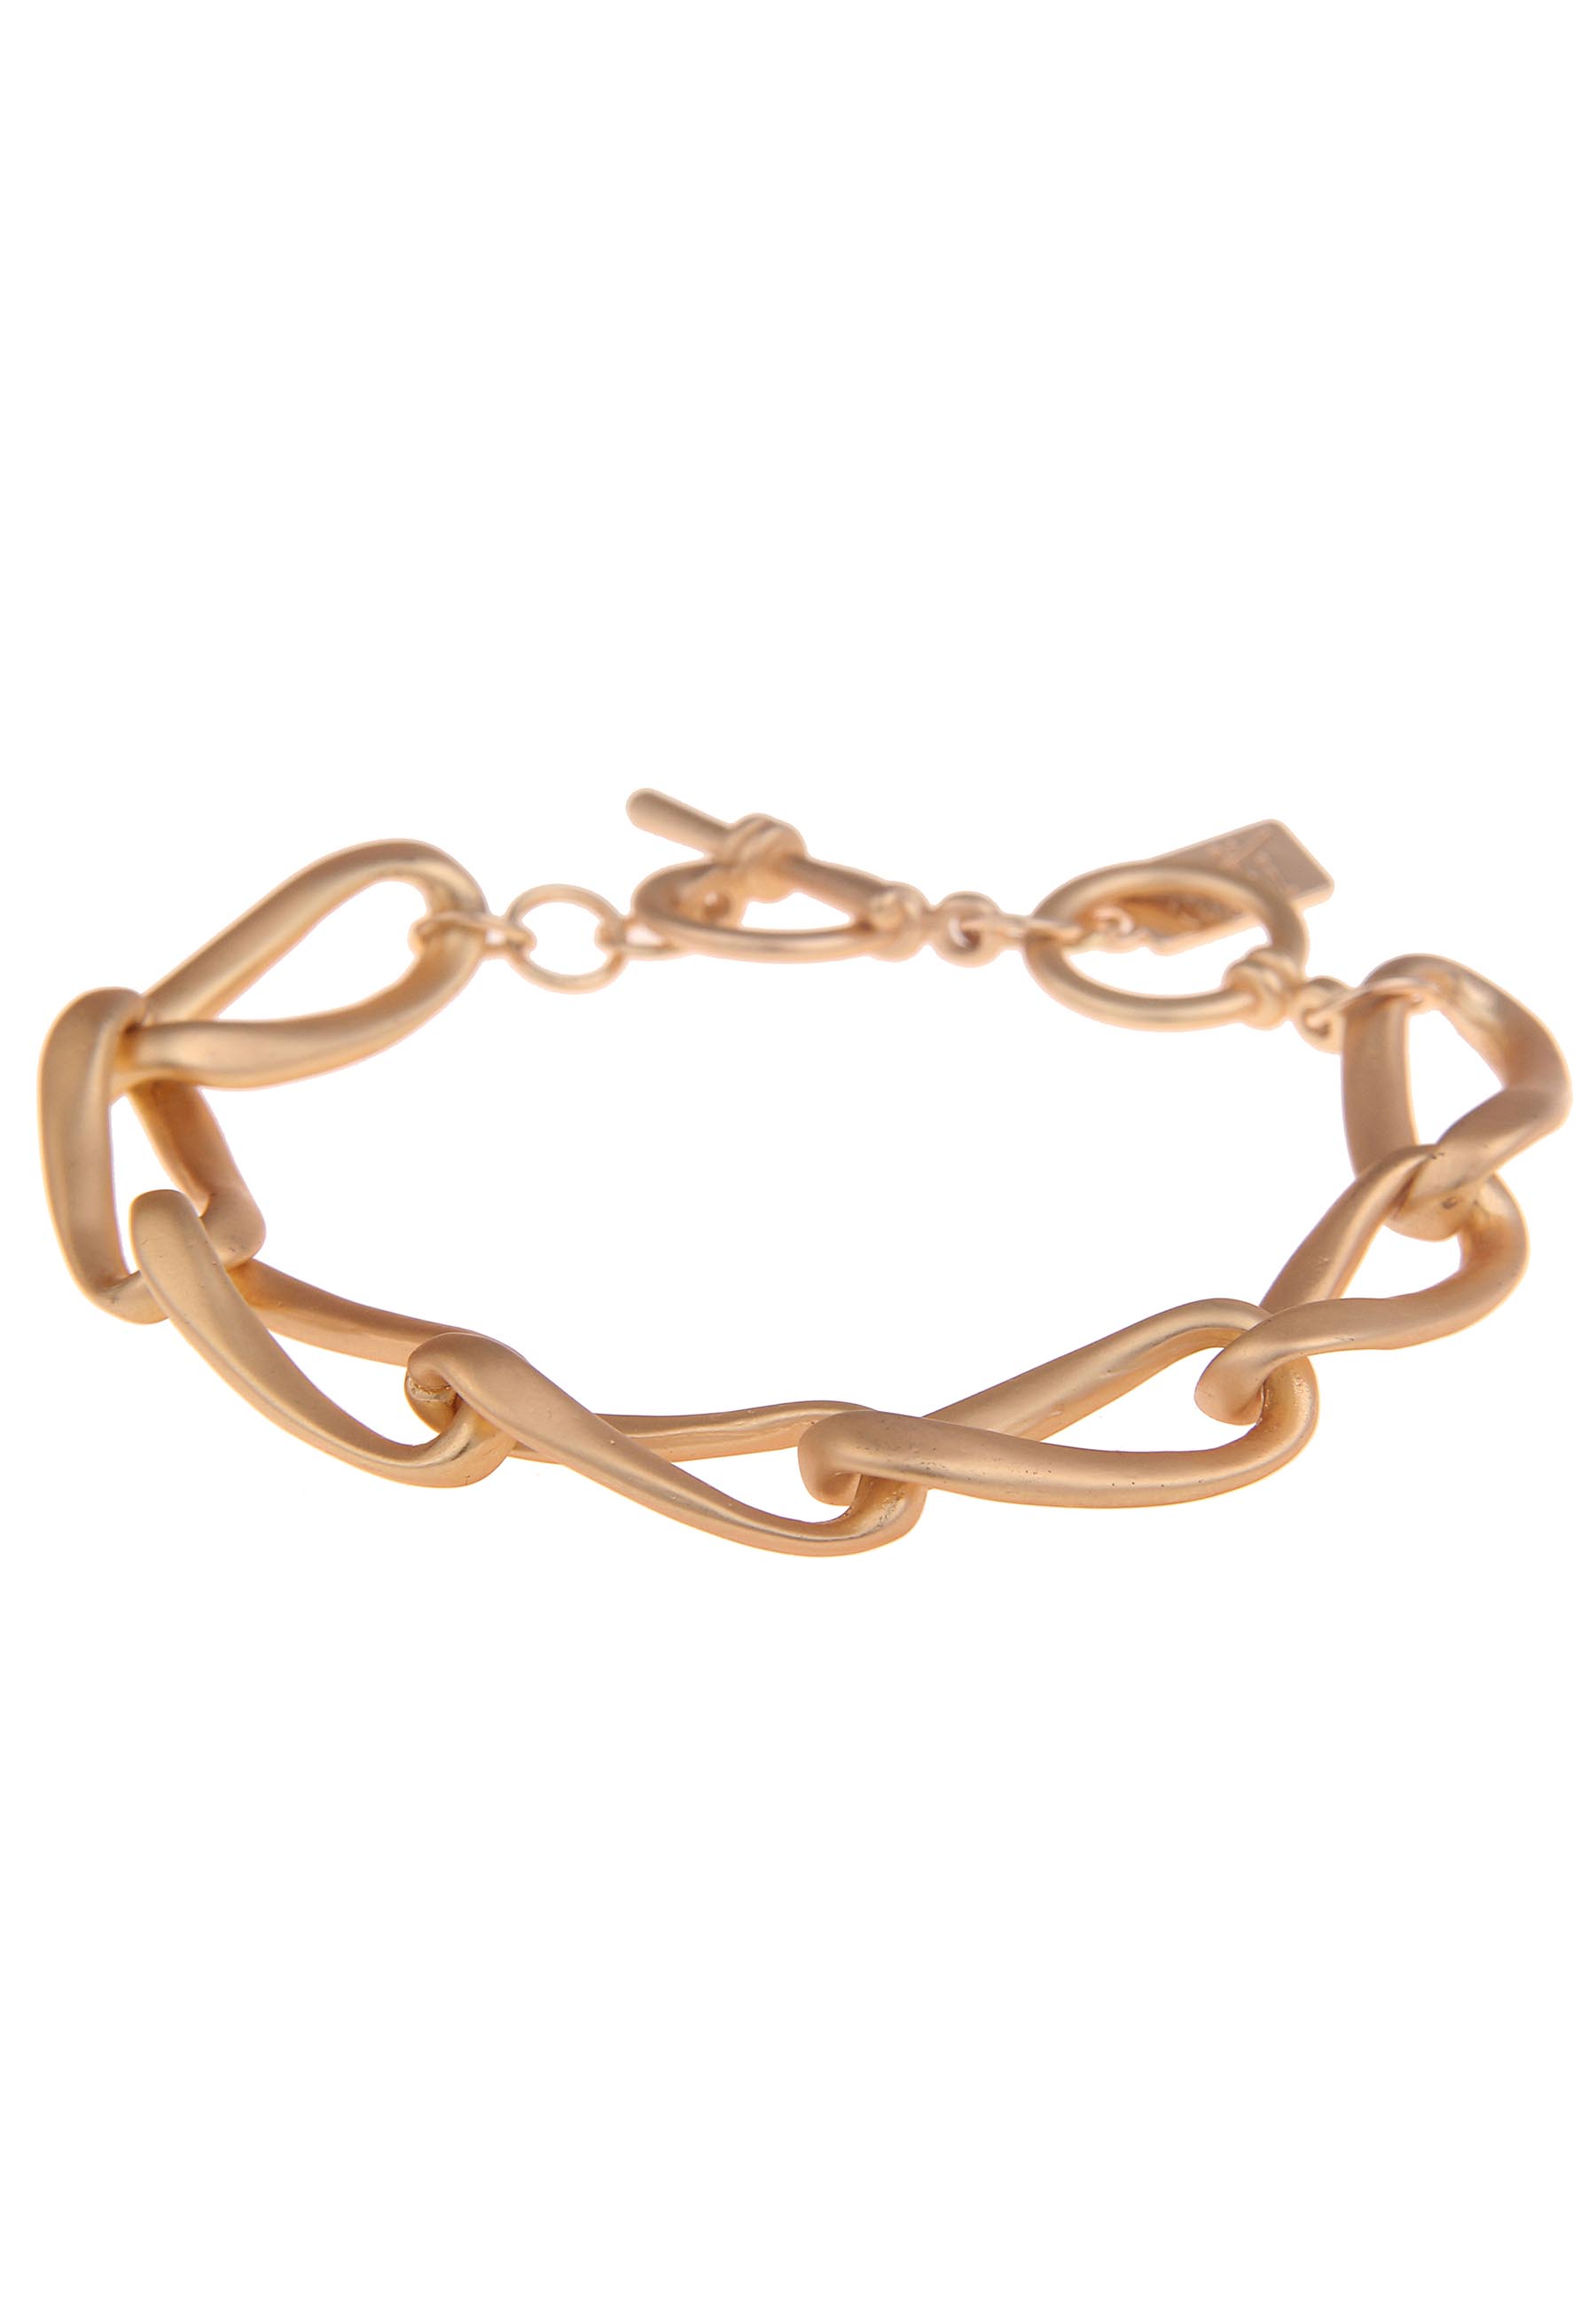 Leslii Glieder-Armband Gold | Leslii Shop Online